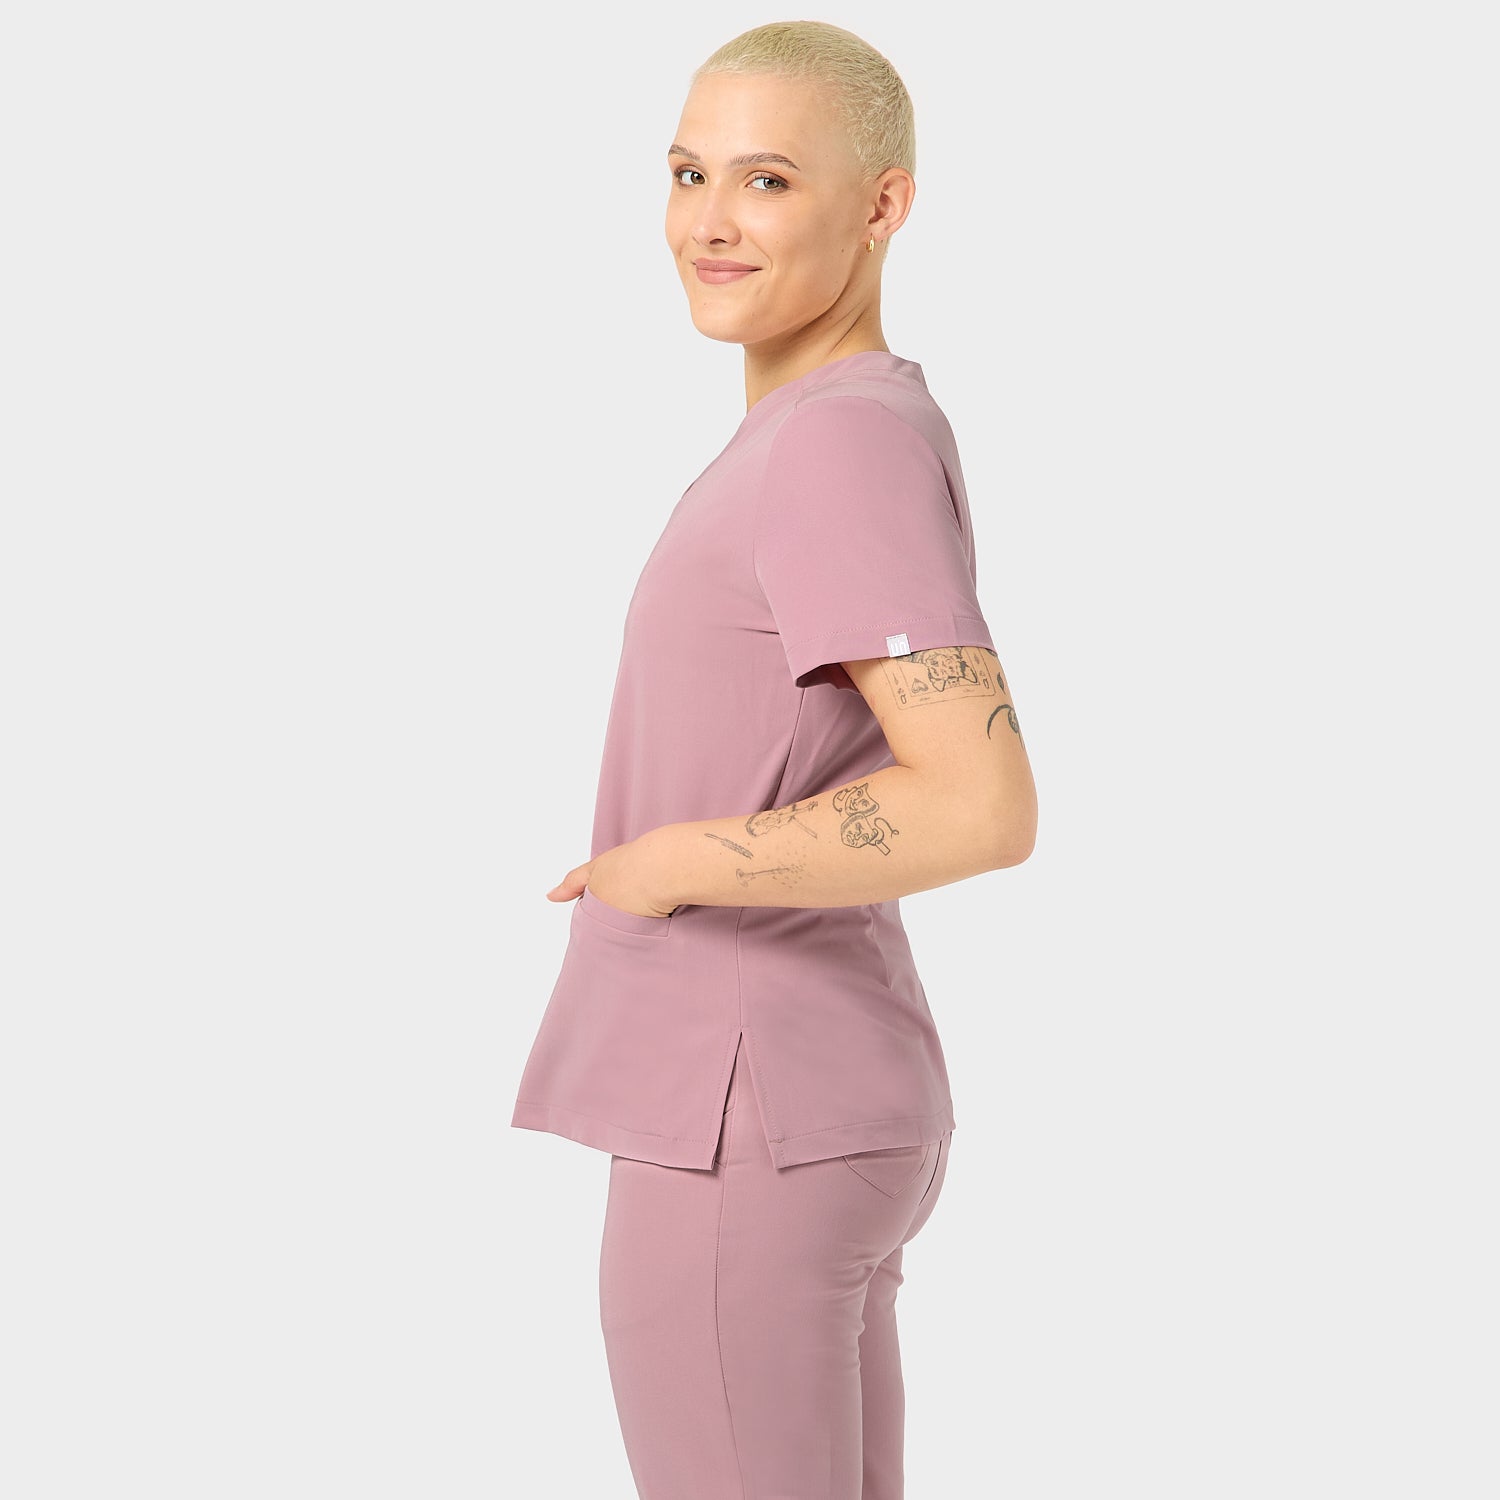 Bluza medyczna damska Emily Blossom Pink na innej modelce, widok bokiem, zdjęcie 1